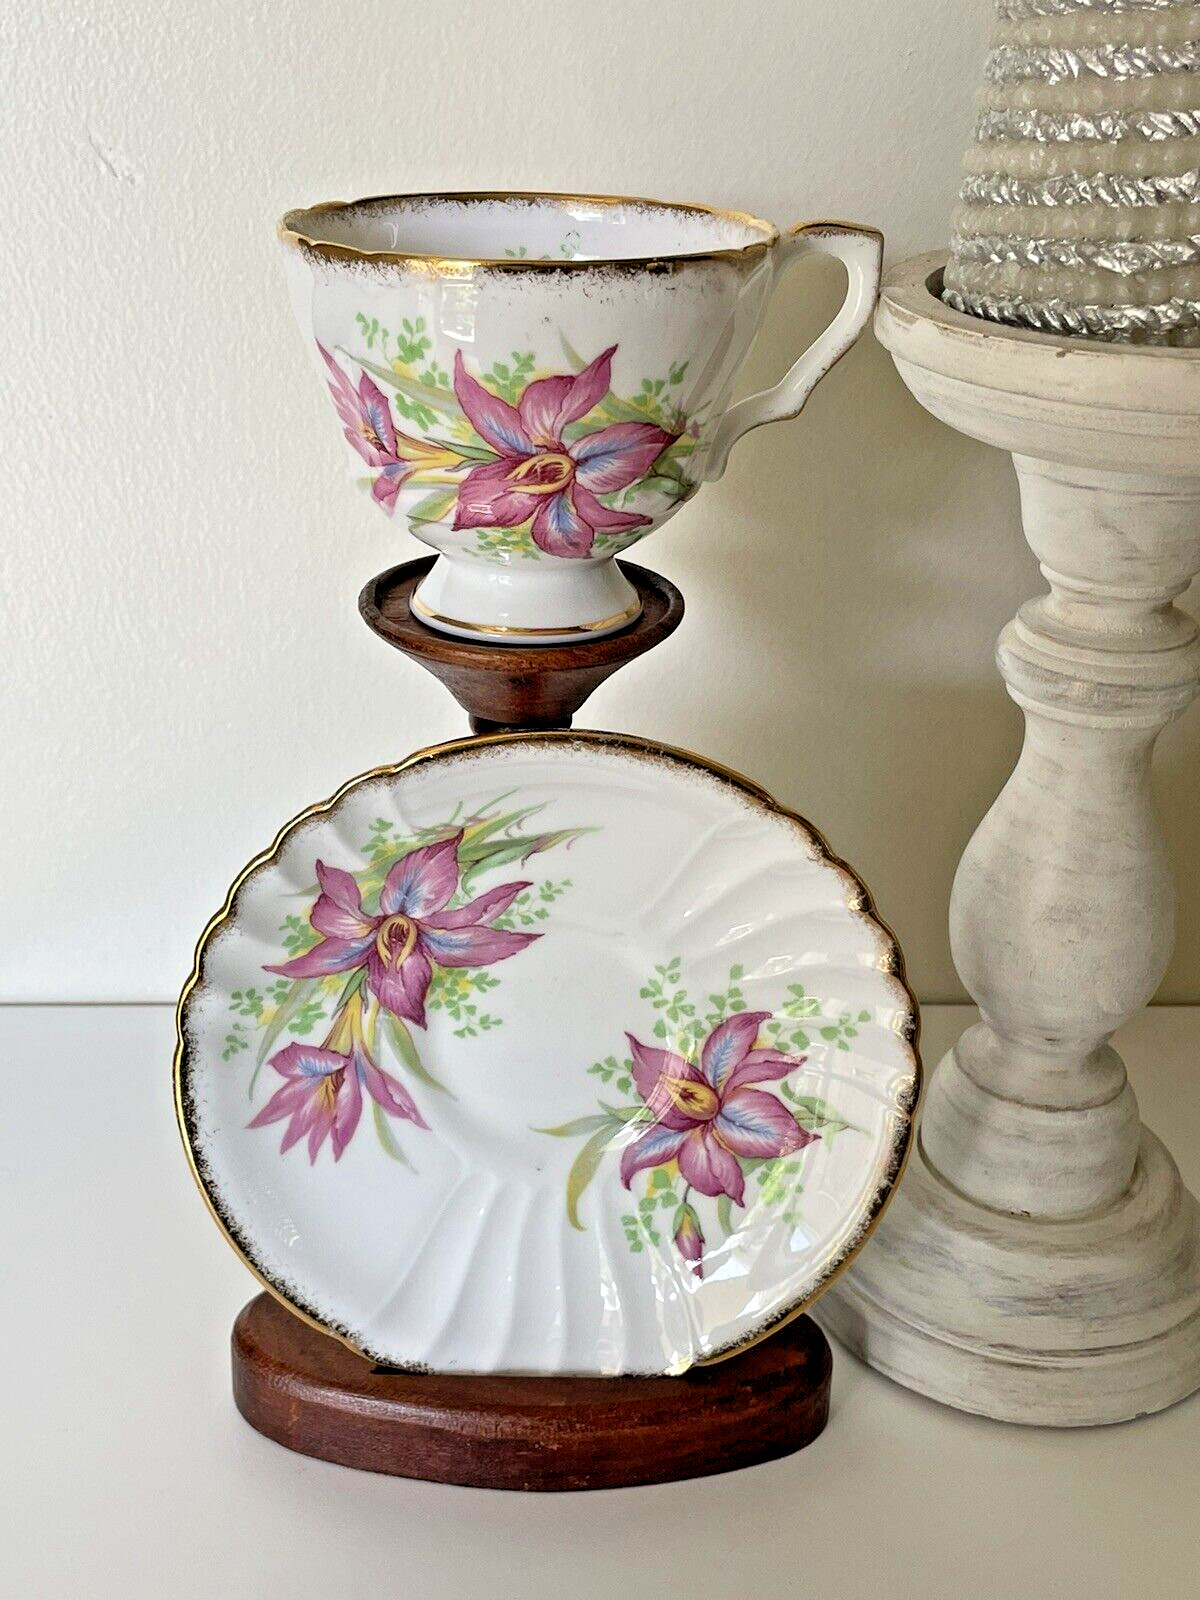 Vintage Royal Stafford Pink Floral Lily Teacup & Saucer Gold Gilt England